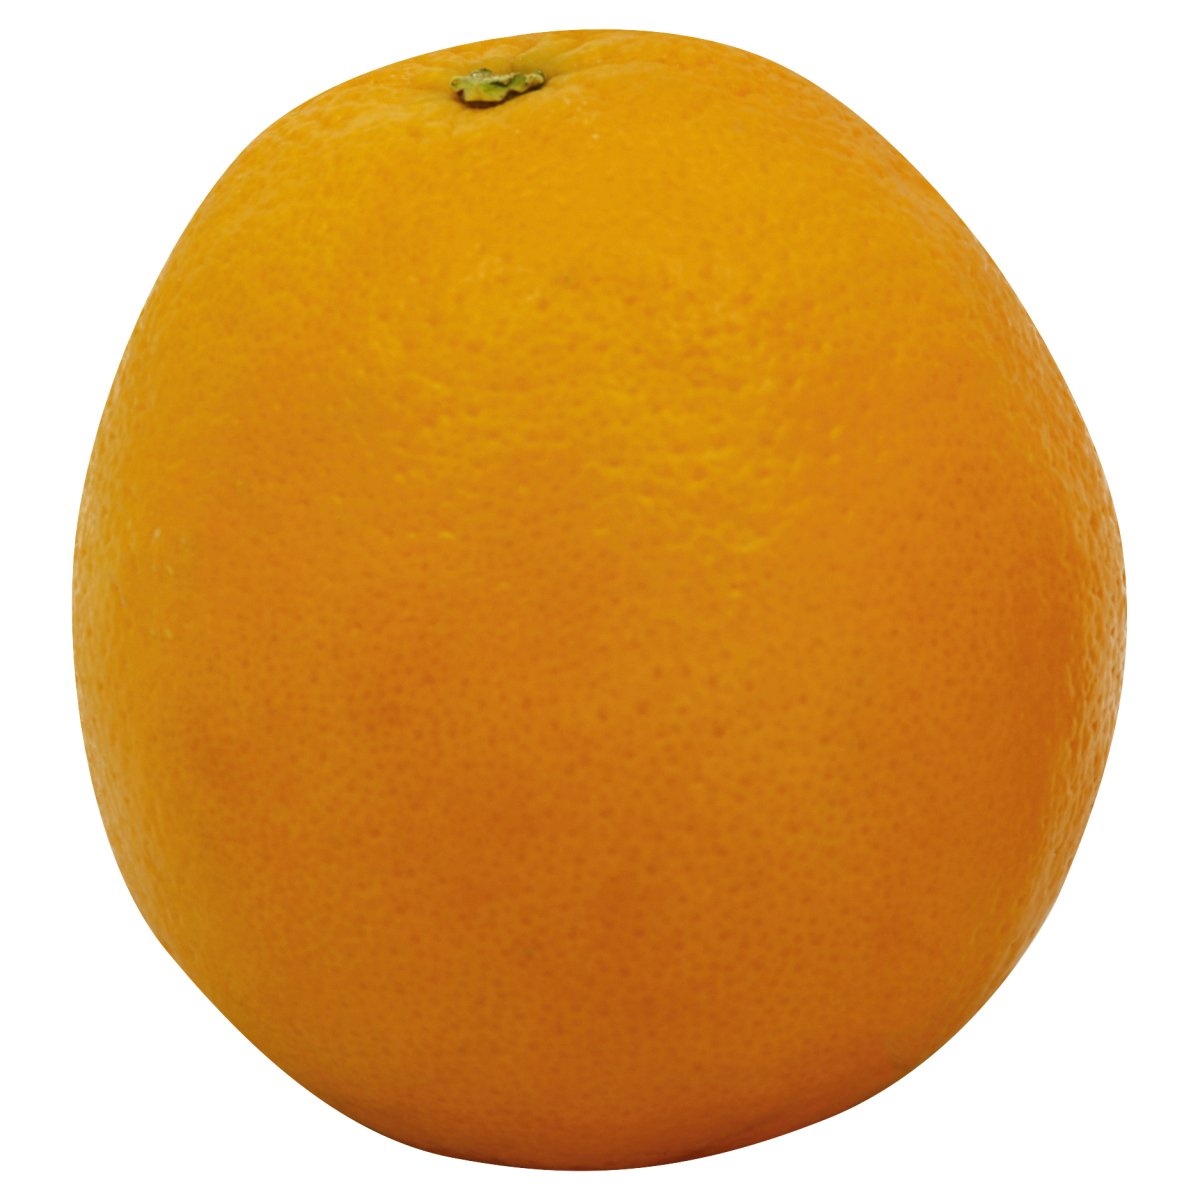 slide 1 of 1, Navel Fancy Orange, per lb